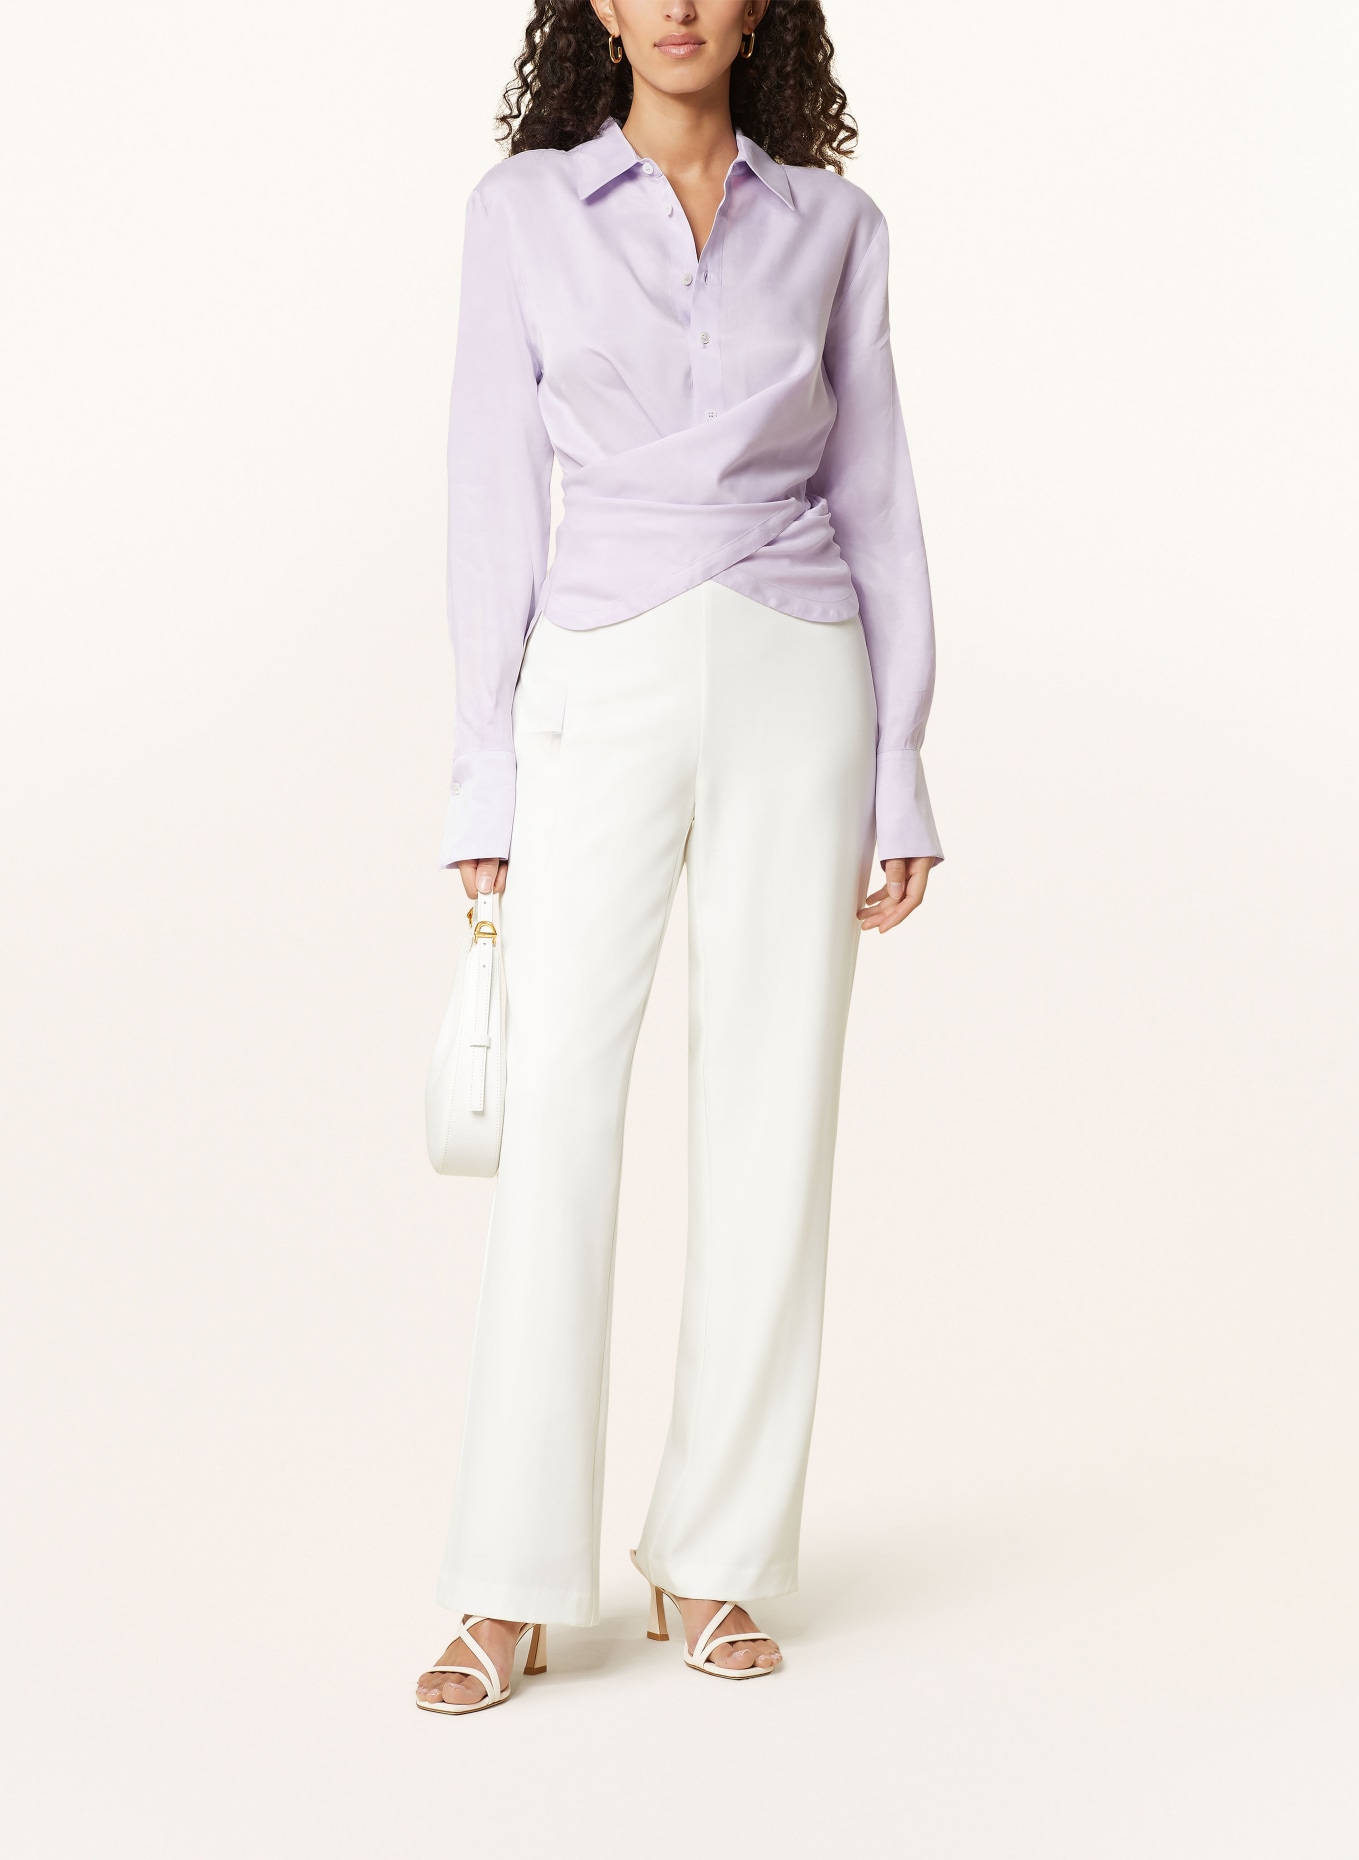 VANILIA Shirt blouse, Color: 6369 Purple rose (Image 2)